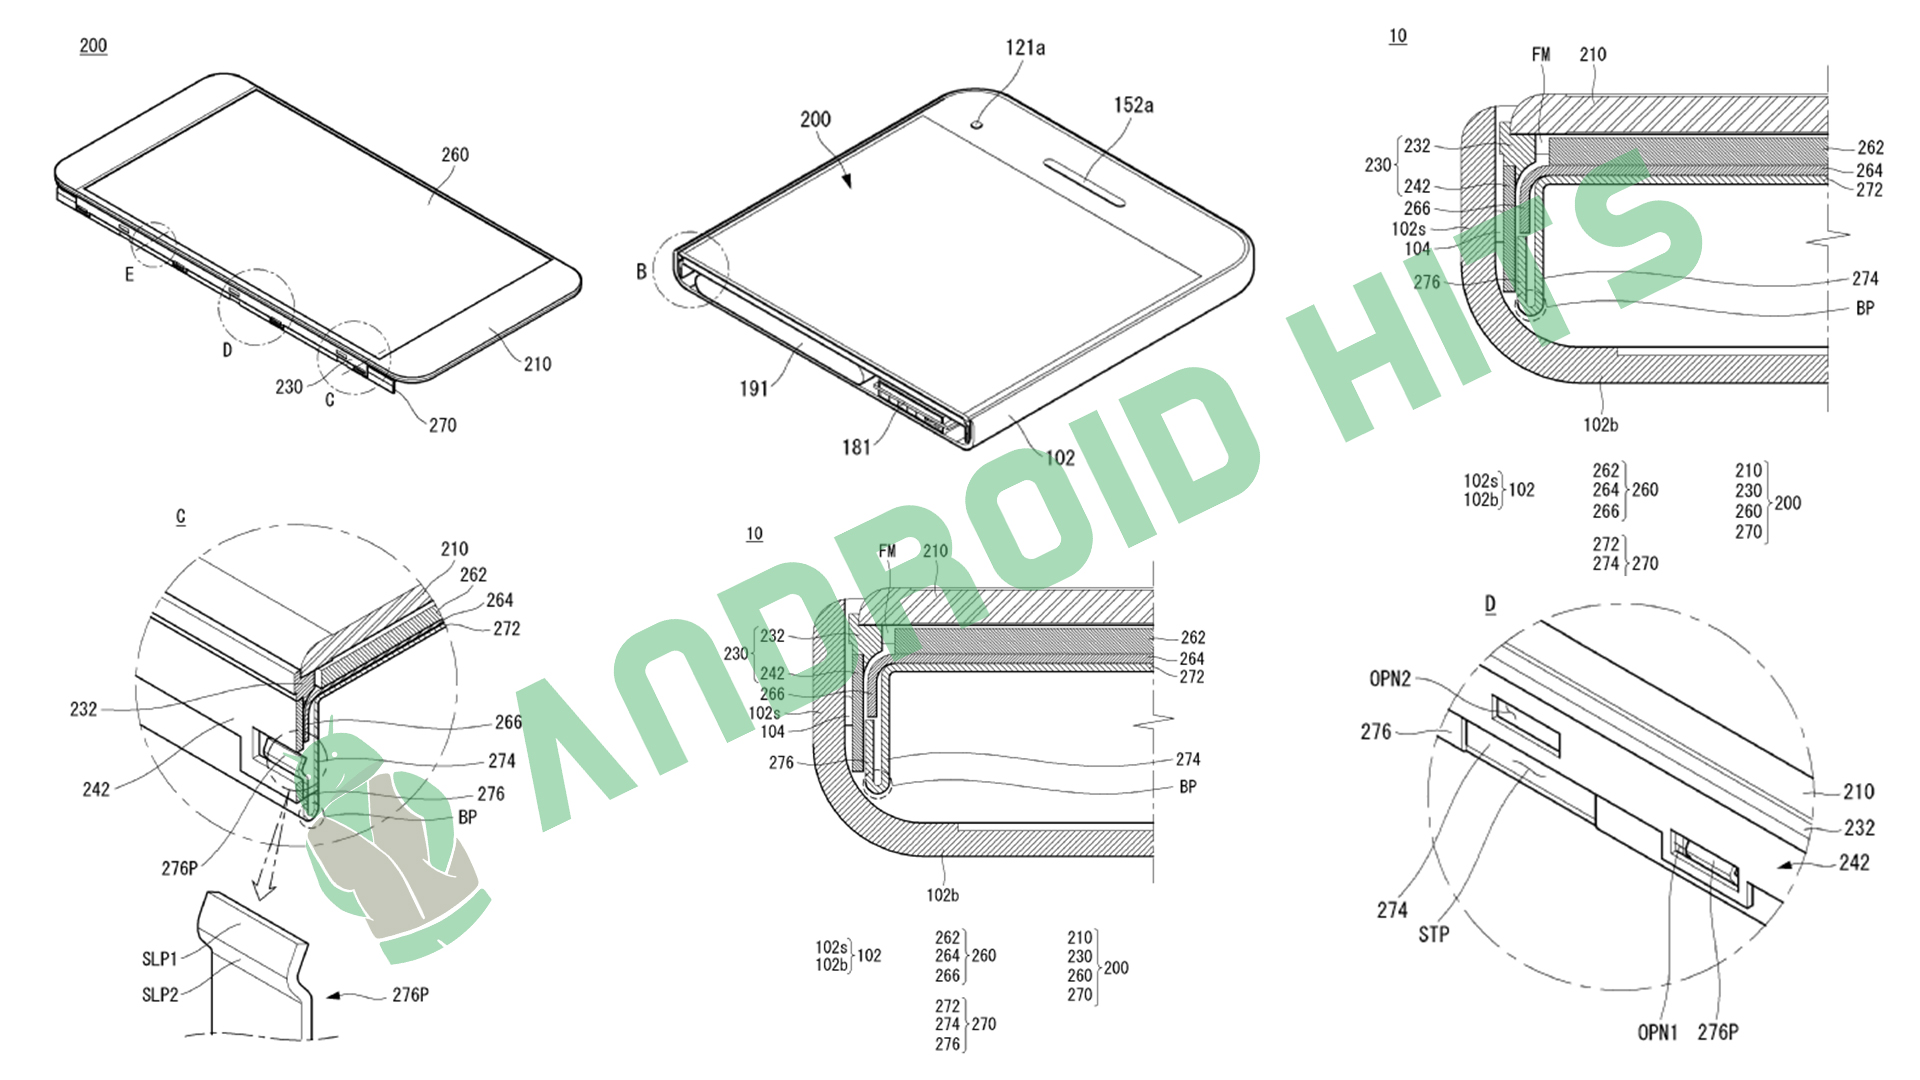 LG Patents Flexible/Detachable Smartphone design 2